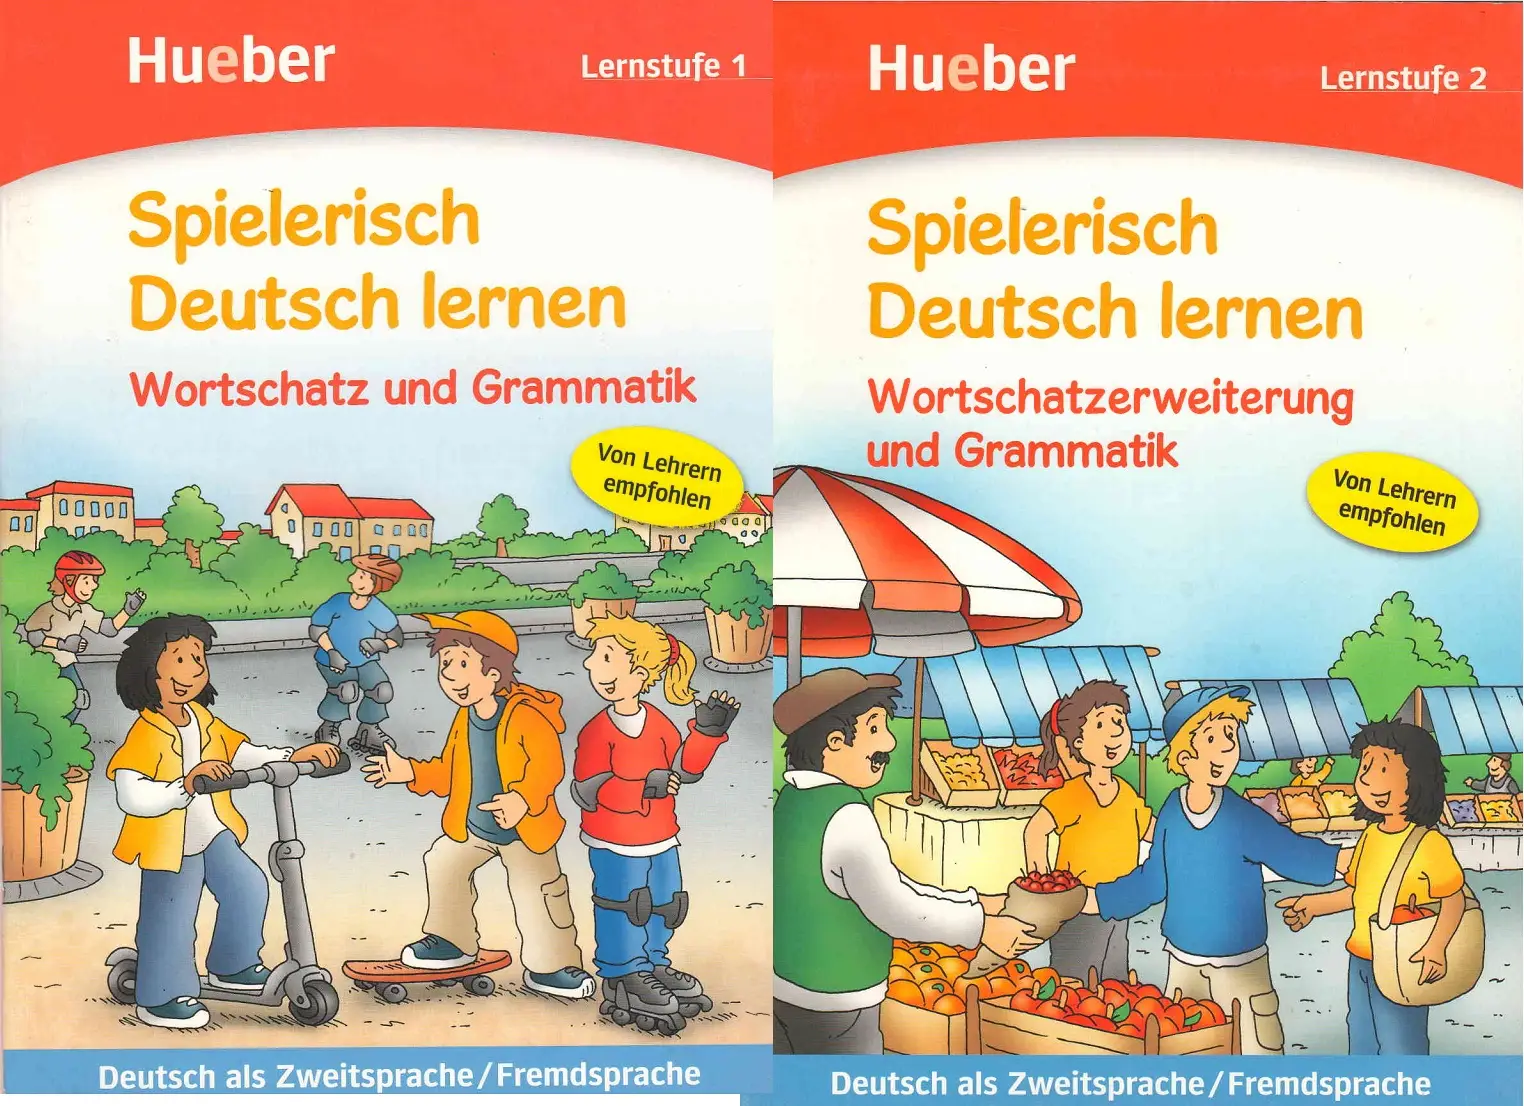 Lernen ist. DW Deutsch lernen приложение. Немецкий язык. Alles klar? Paket Hueber.